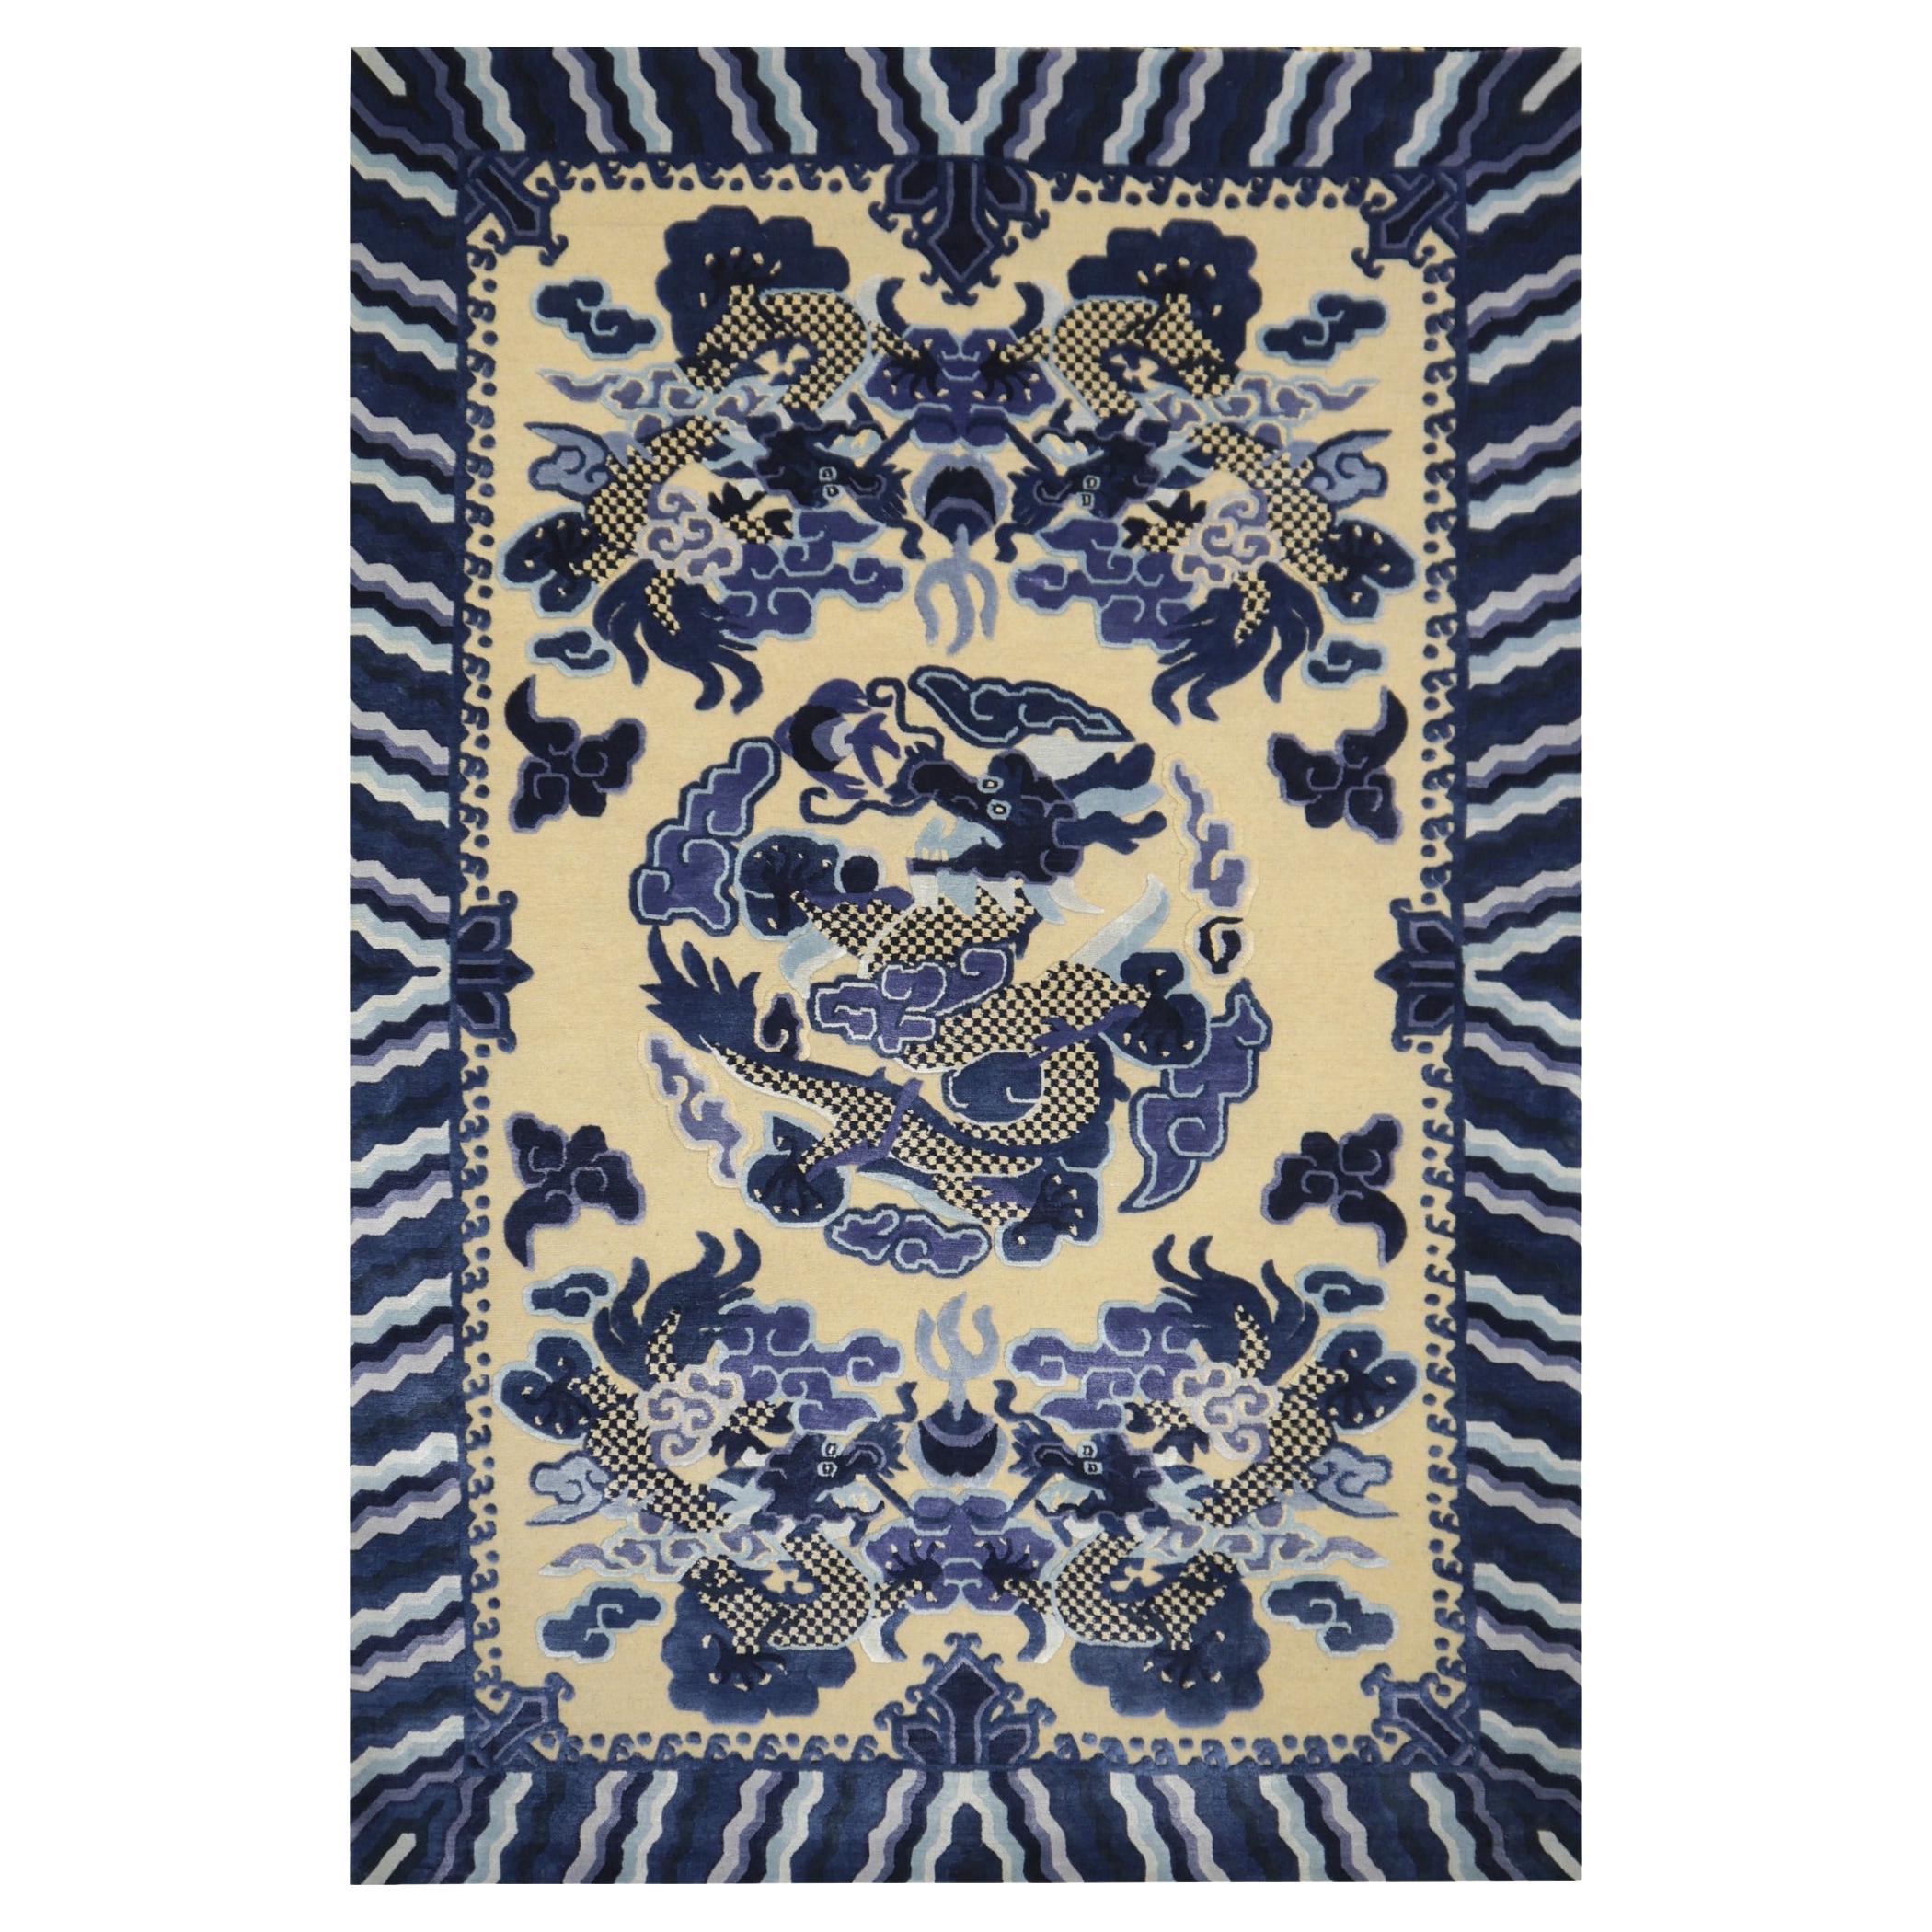 Teppich im Drachenmuster aus Wolle und Seide im chinesischen kaiserlichen Kansu-Stil in Blau und Beige